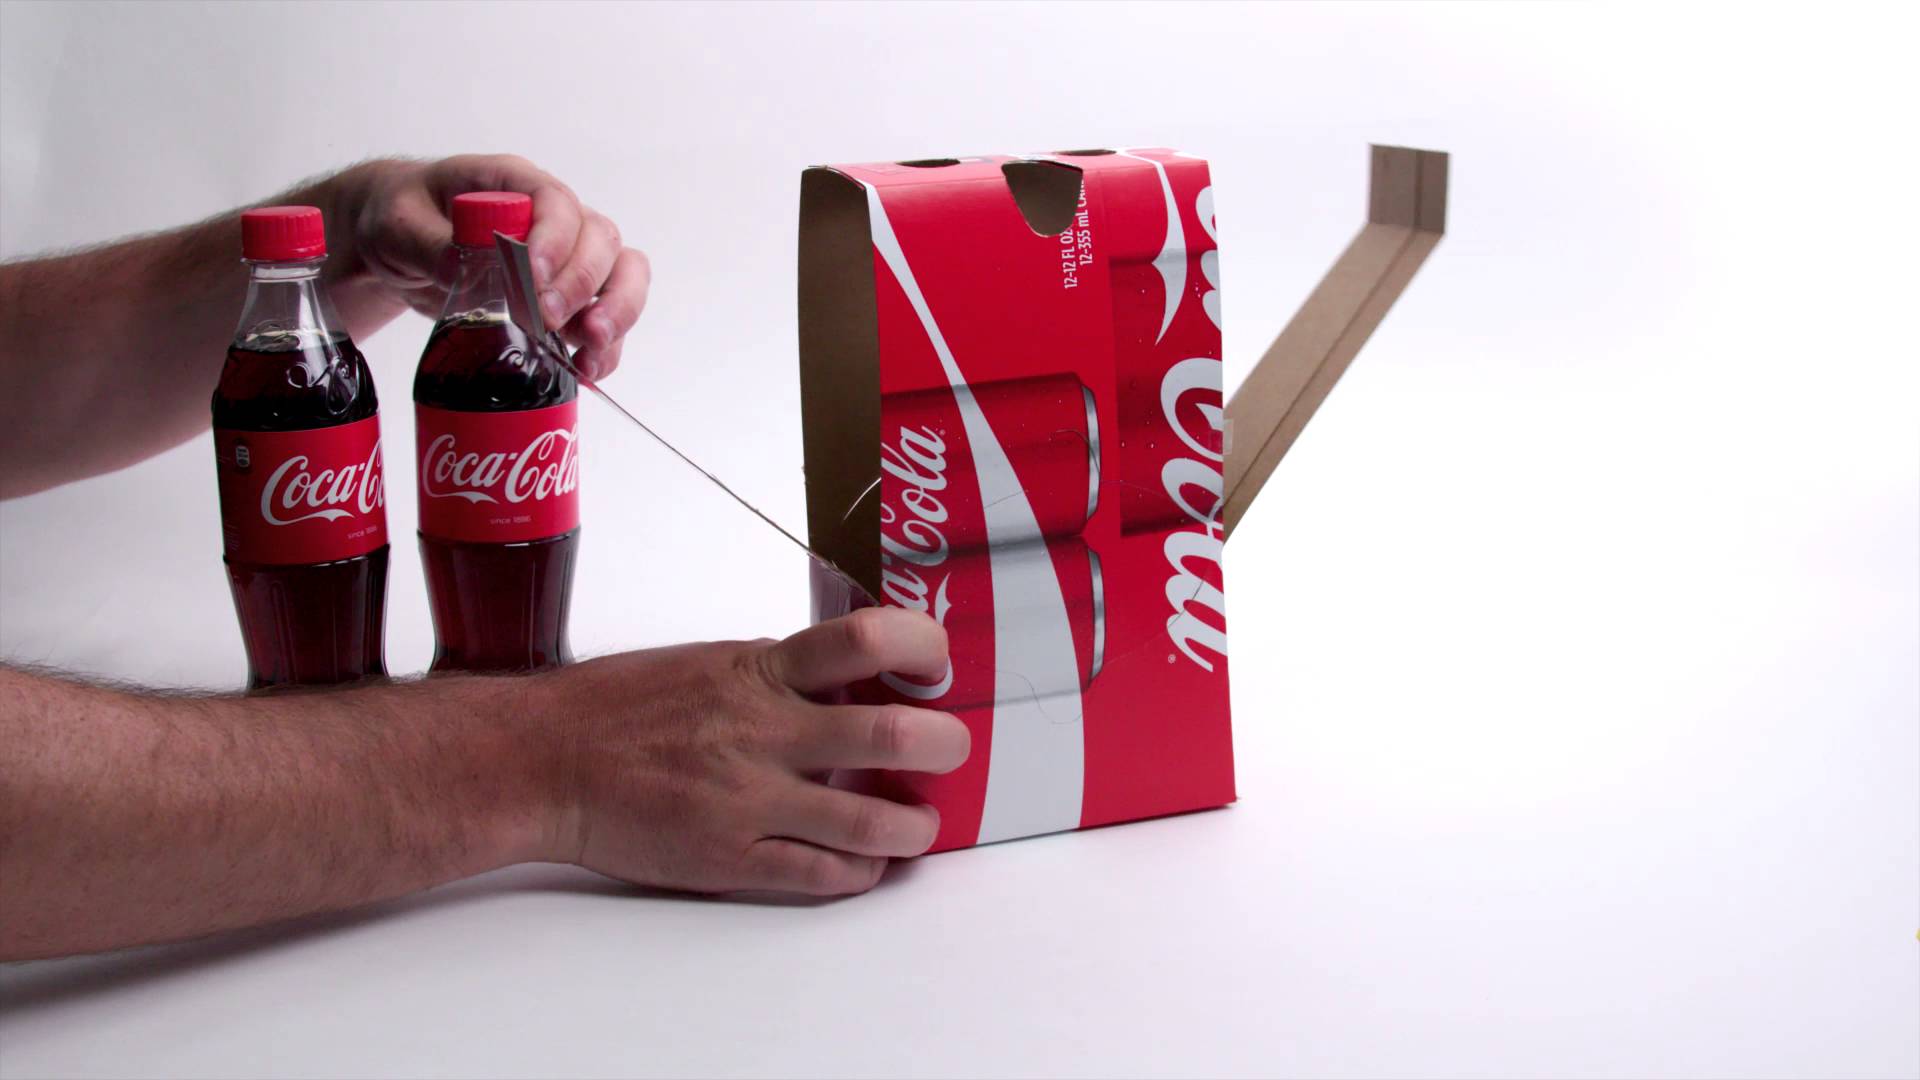 Tự làm tại nhà kính thực tế ảo cho iPhone từ vỏ hộp Coca